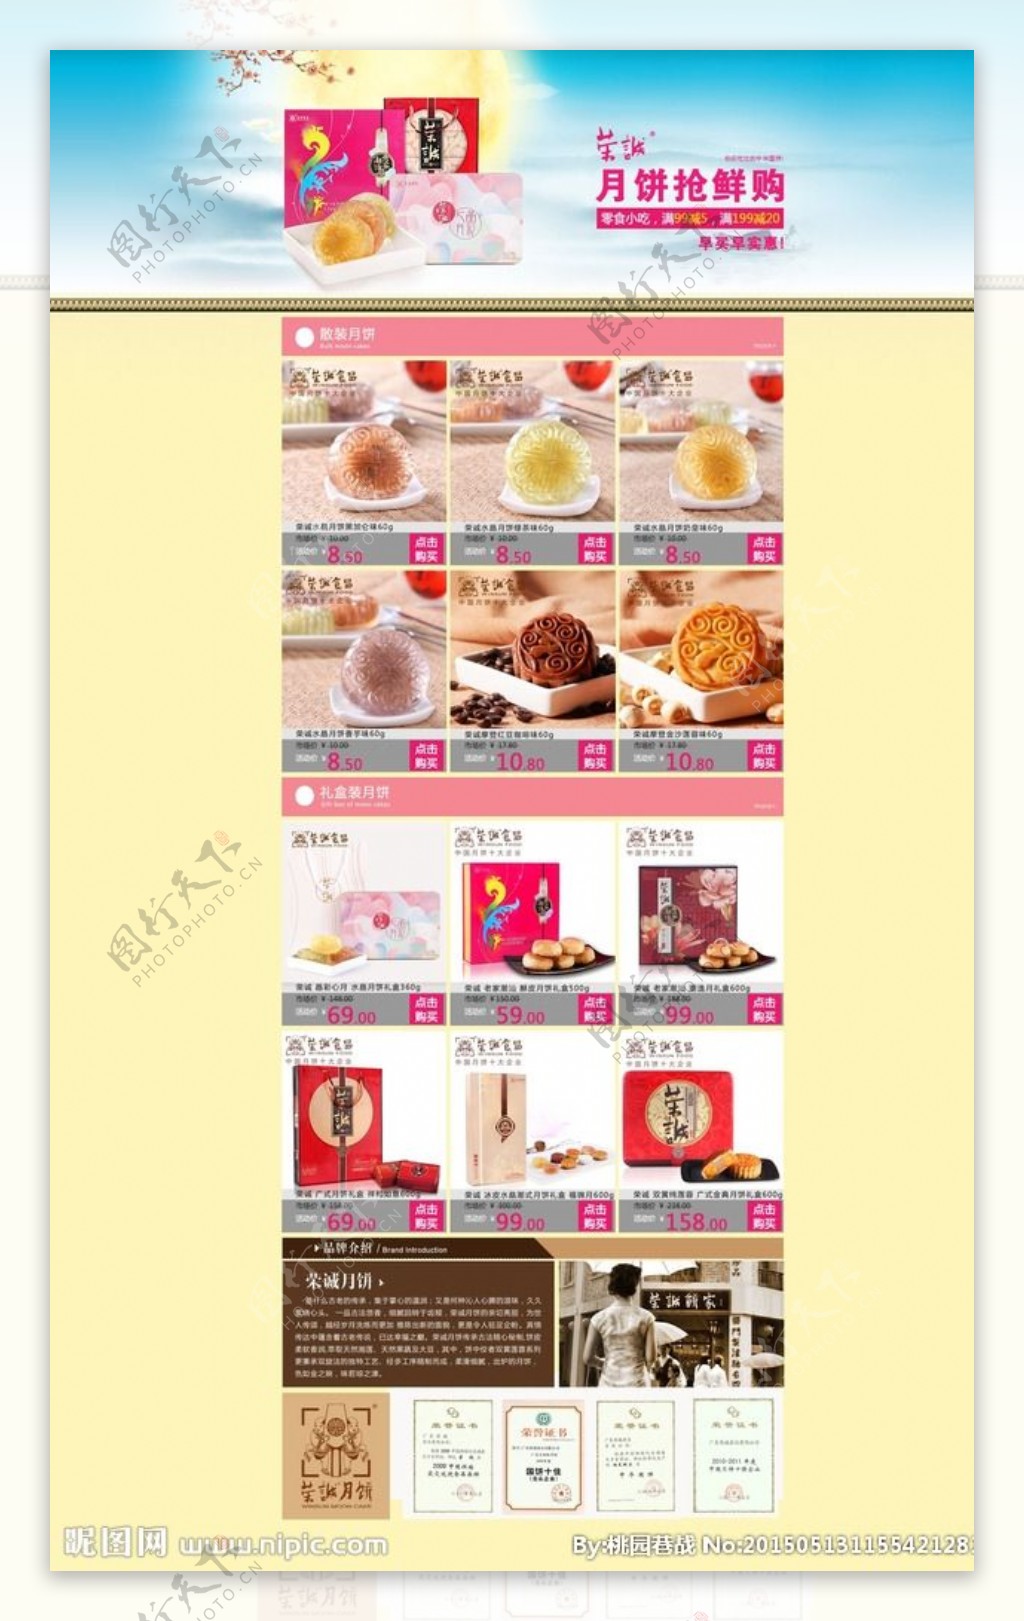 荣诚中秋月饼特卖活动页面图片